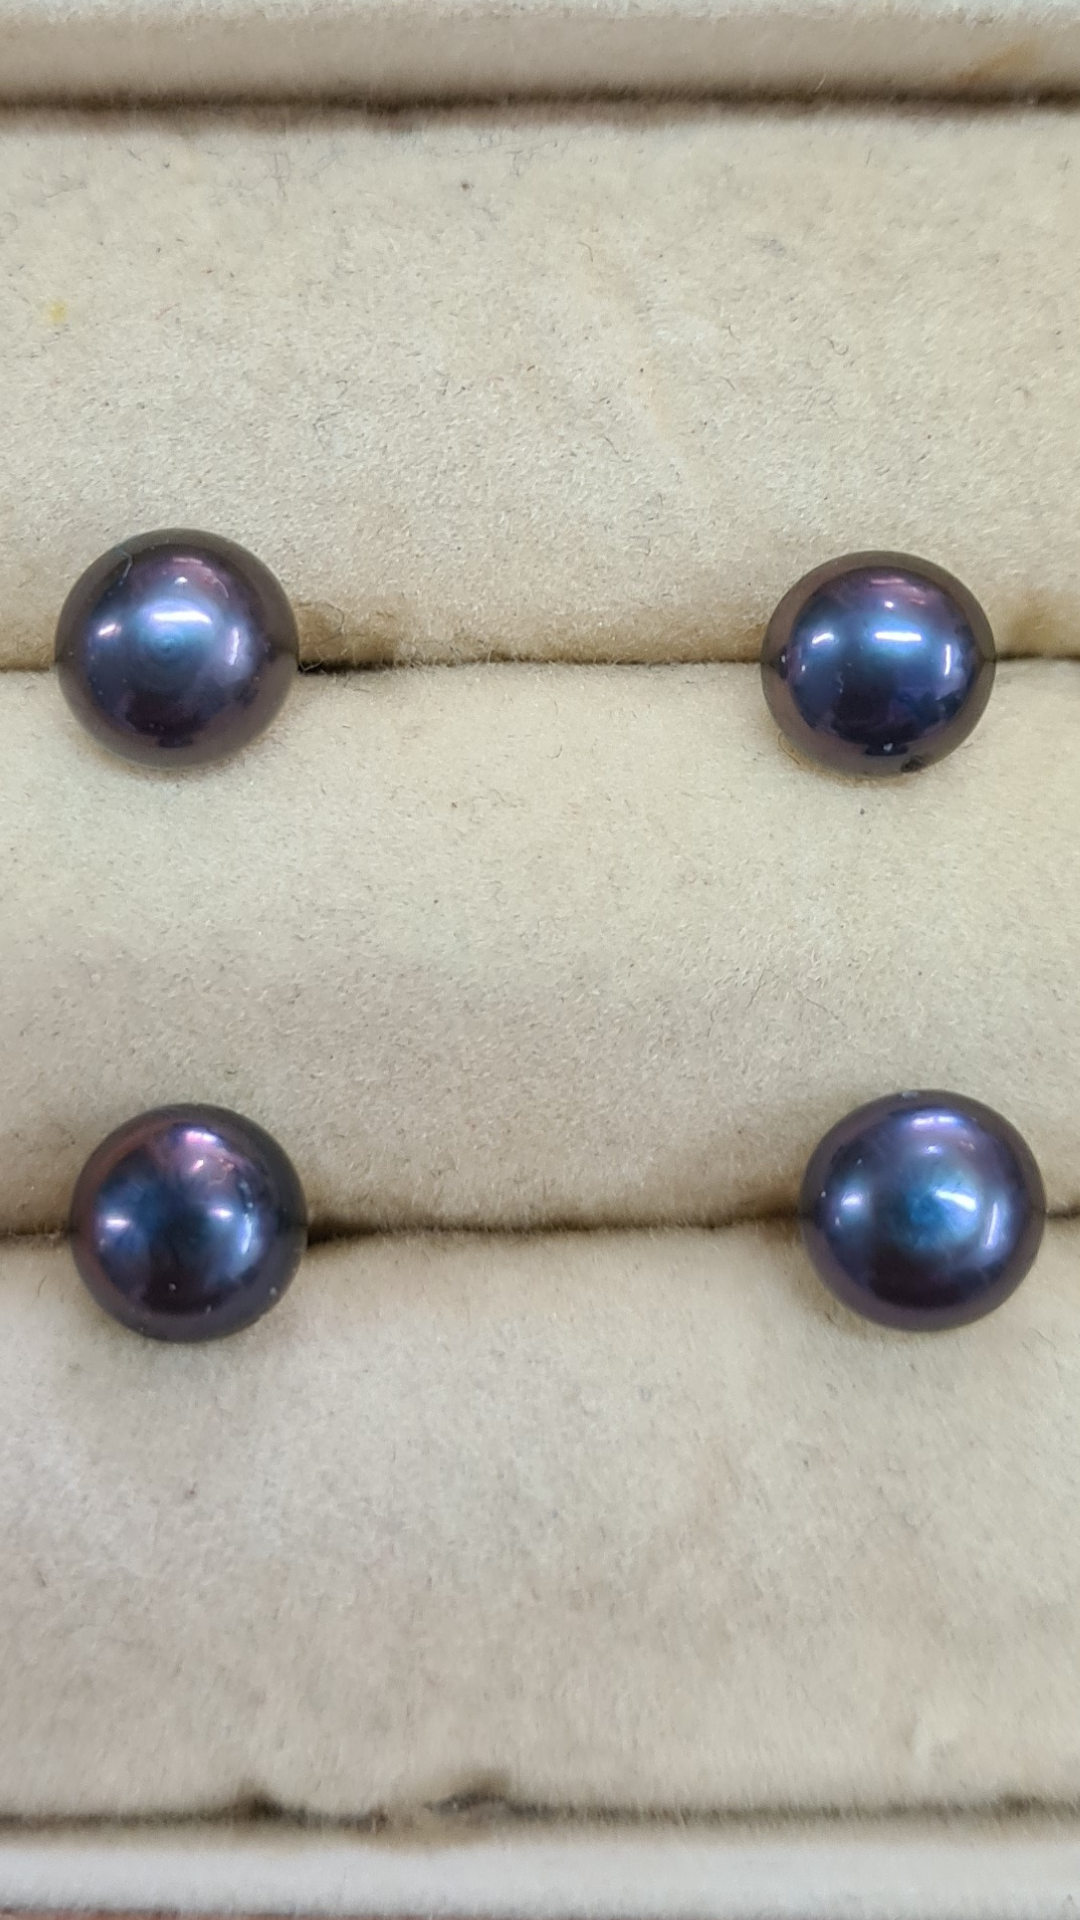 6mm Black/peacock freshwater pearl stud earrings